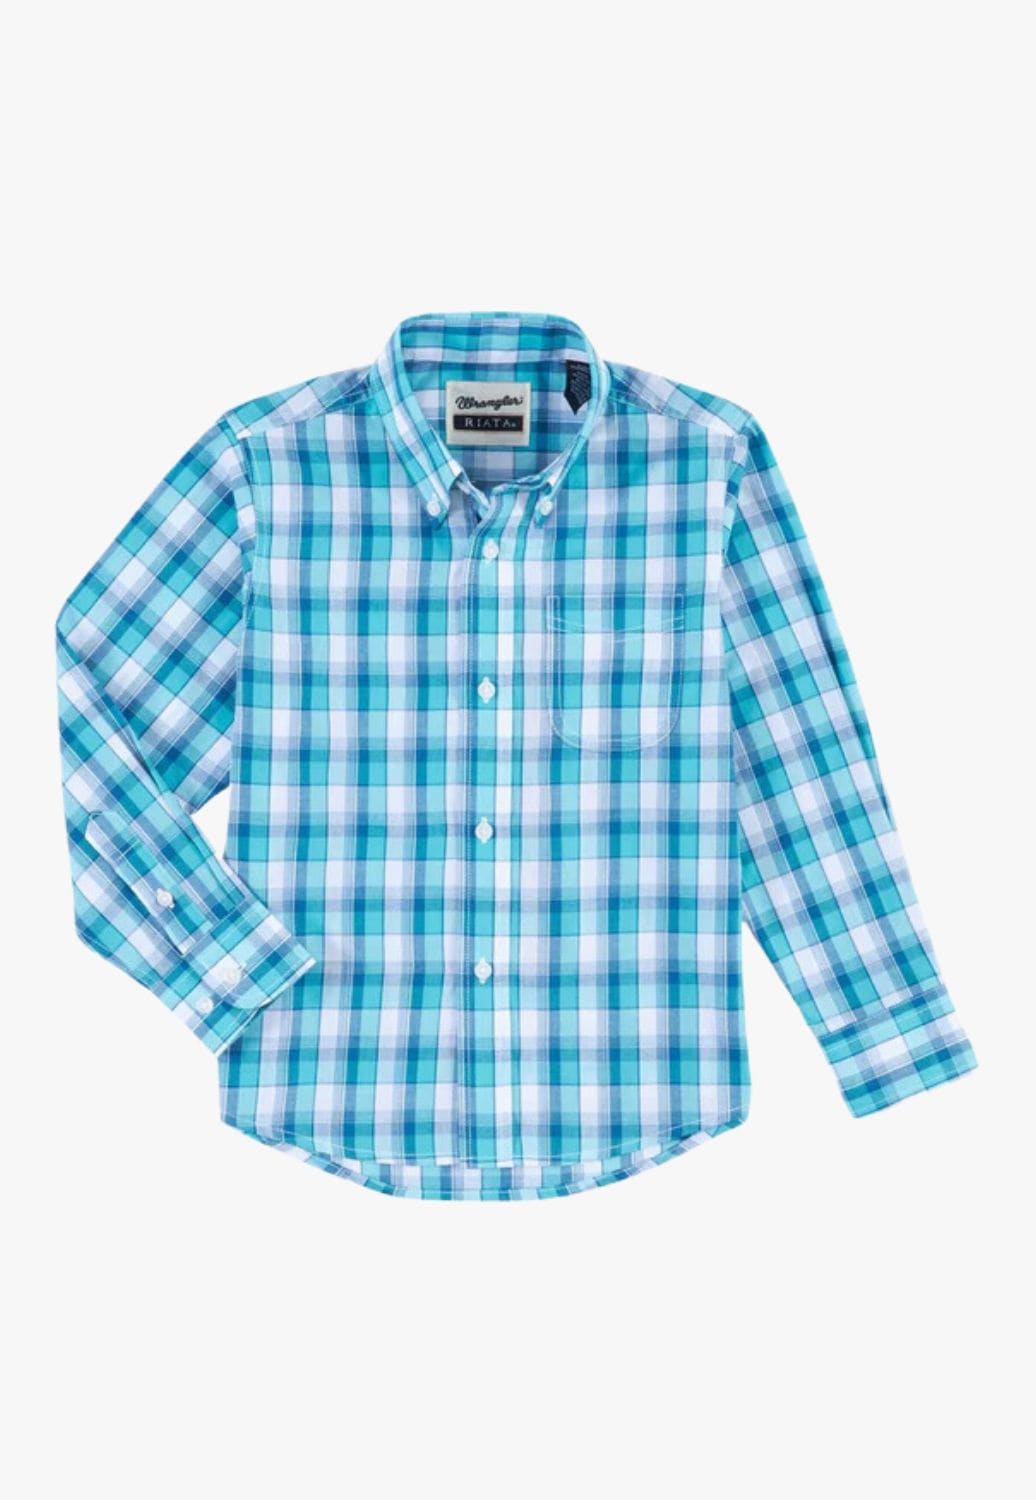 Wrangler CLOTHING-Boys Long Sleeve Shirts Wrangler Boys Riata Long Sleeve Shirts